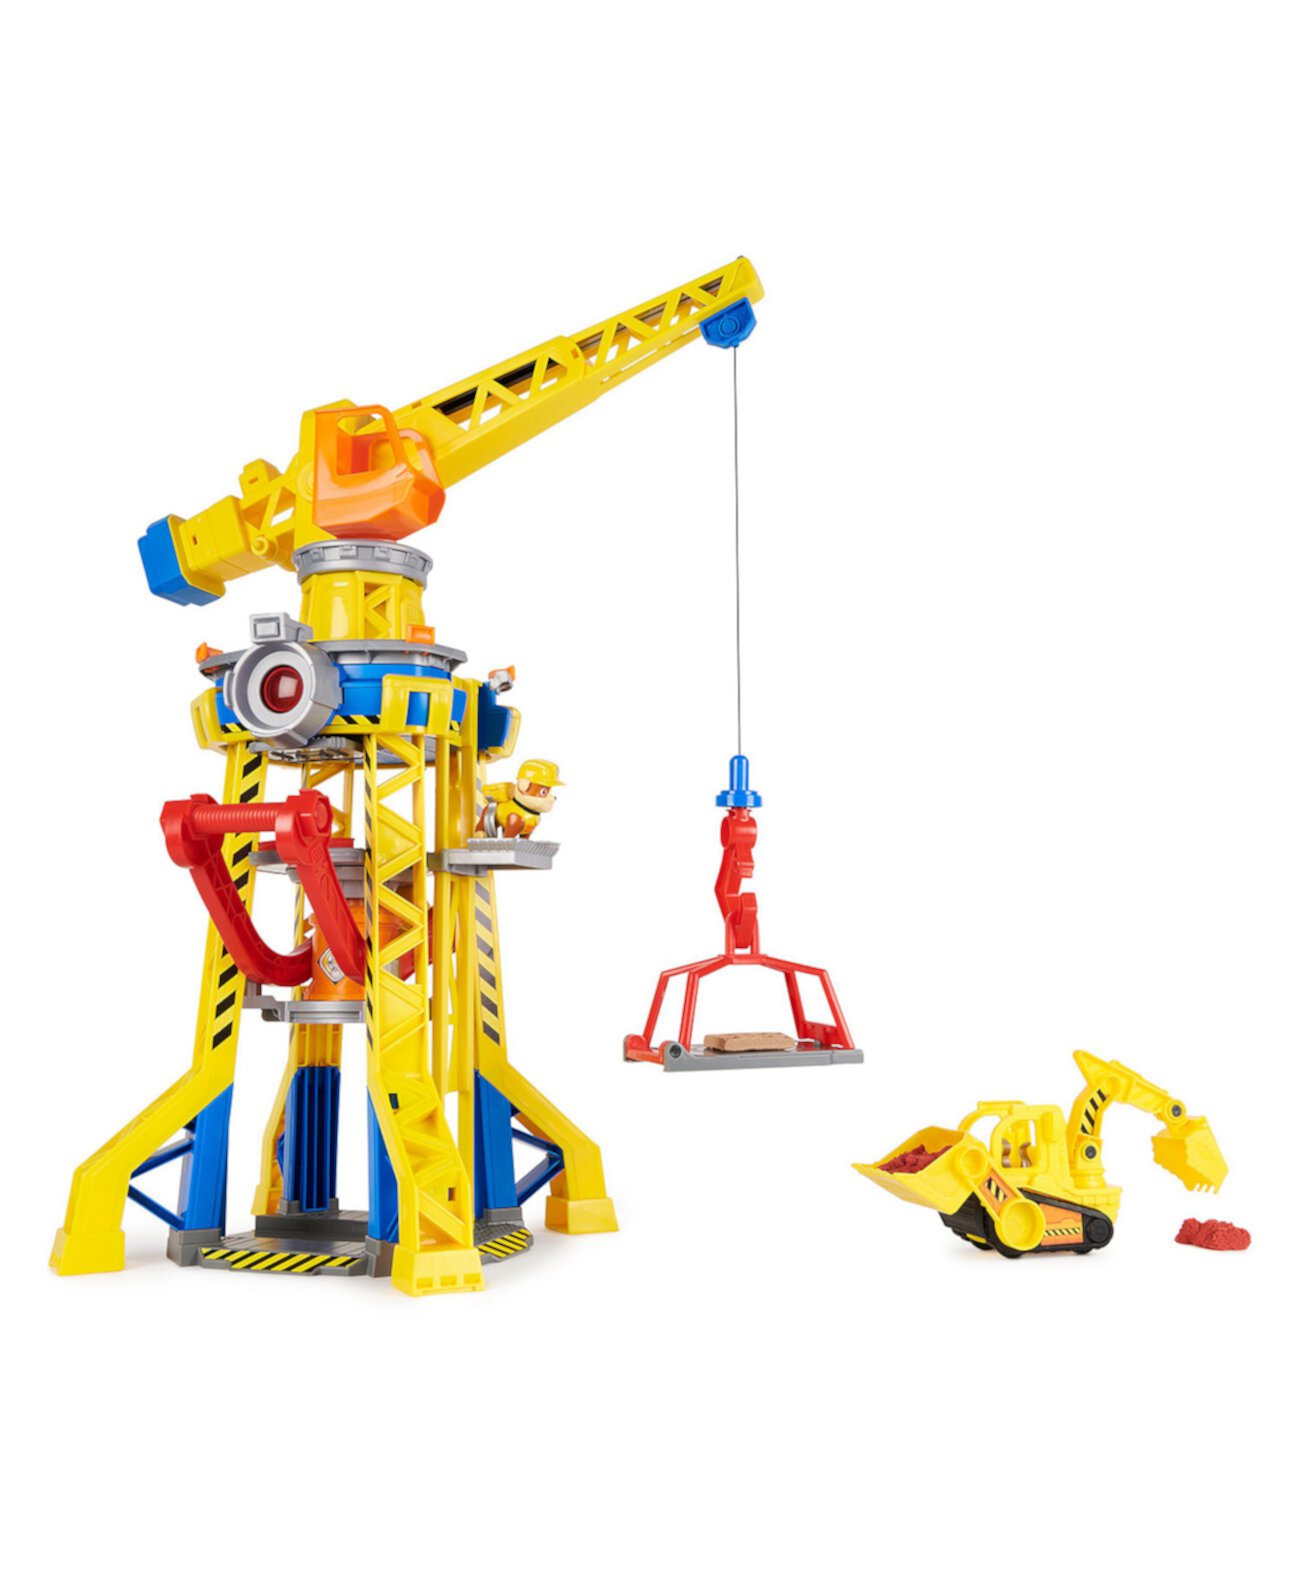 Игровой набор Bark Yard Crane Tower с фигуркой из щебня, игрушечный бульдозер, кинетический сборочный песок, детские игрушки для мальчиков и девочек 3 плюс Rubble & Crew